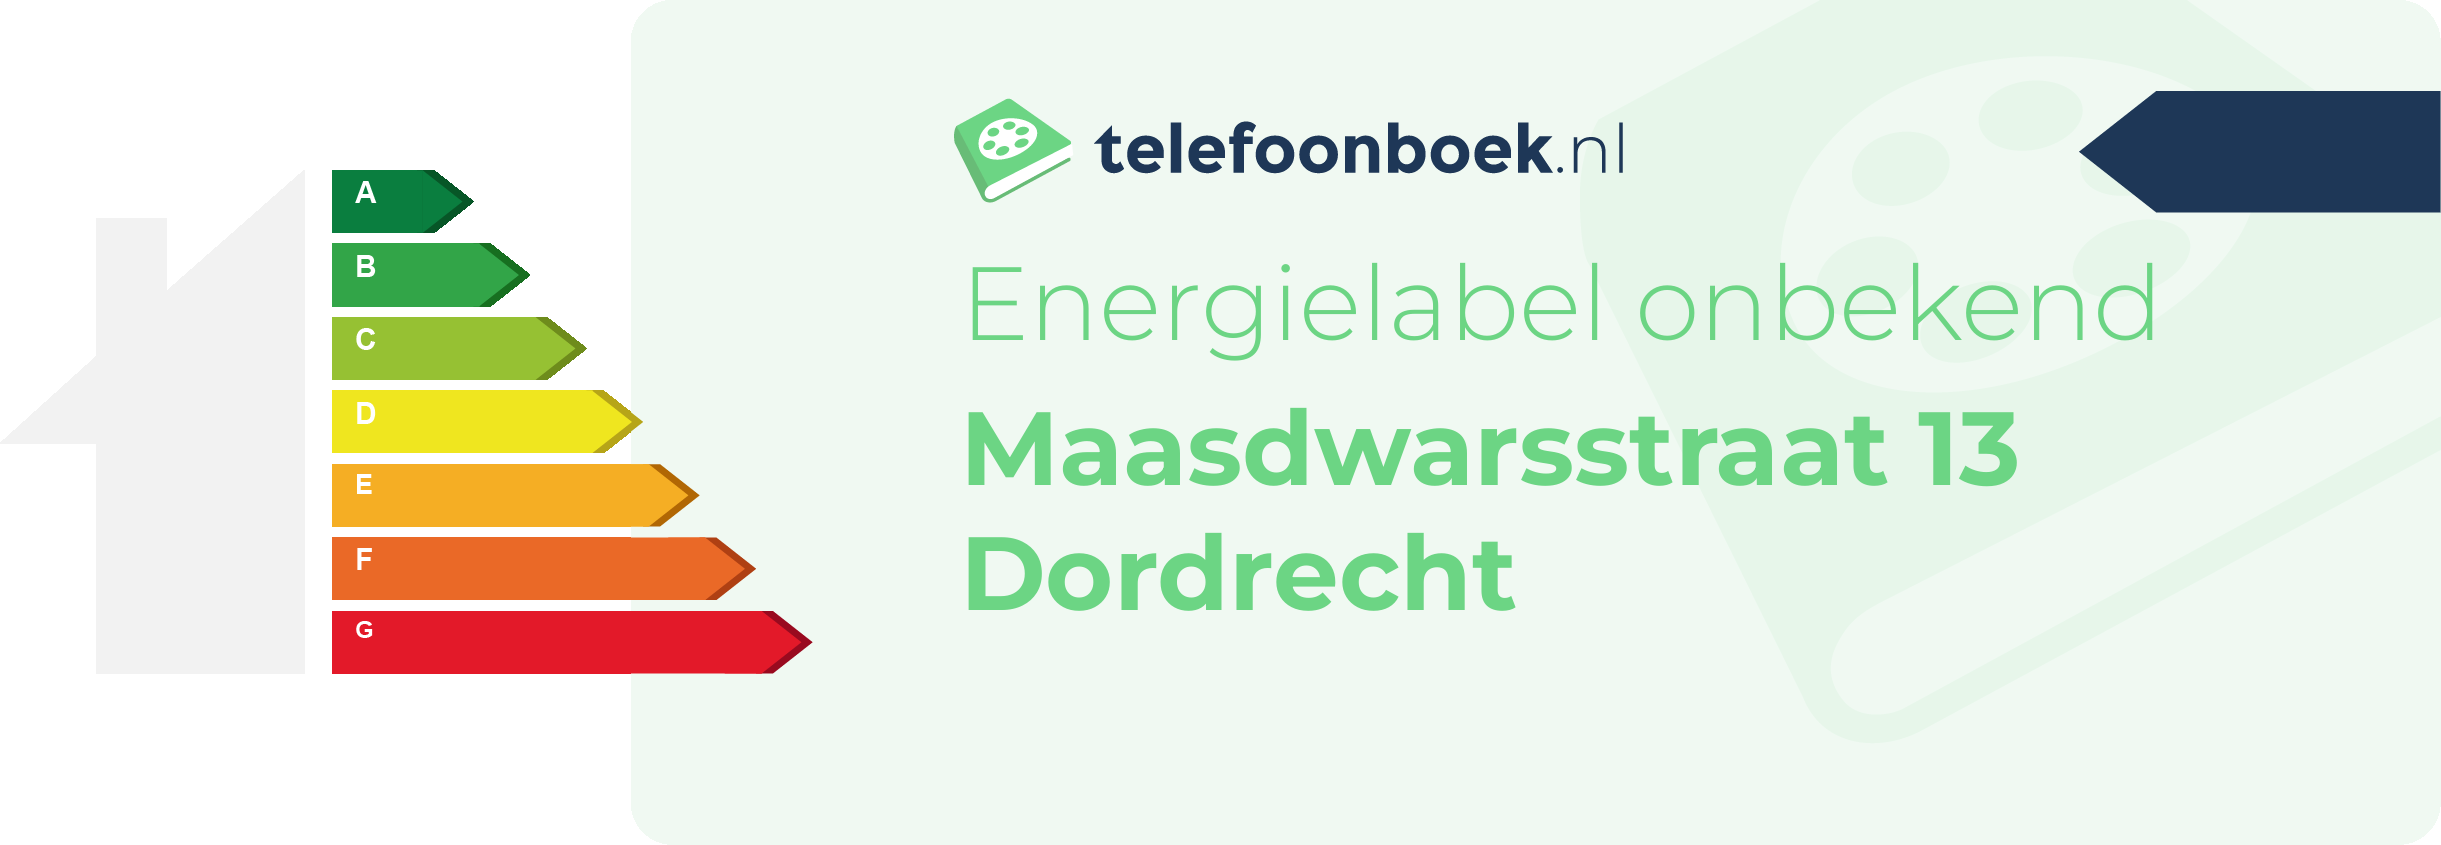 Energielabel Maasdwarsstraat 13 Dordrecht